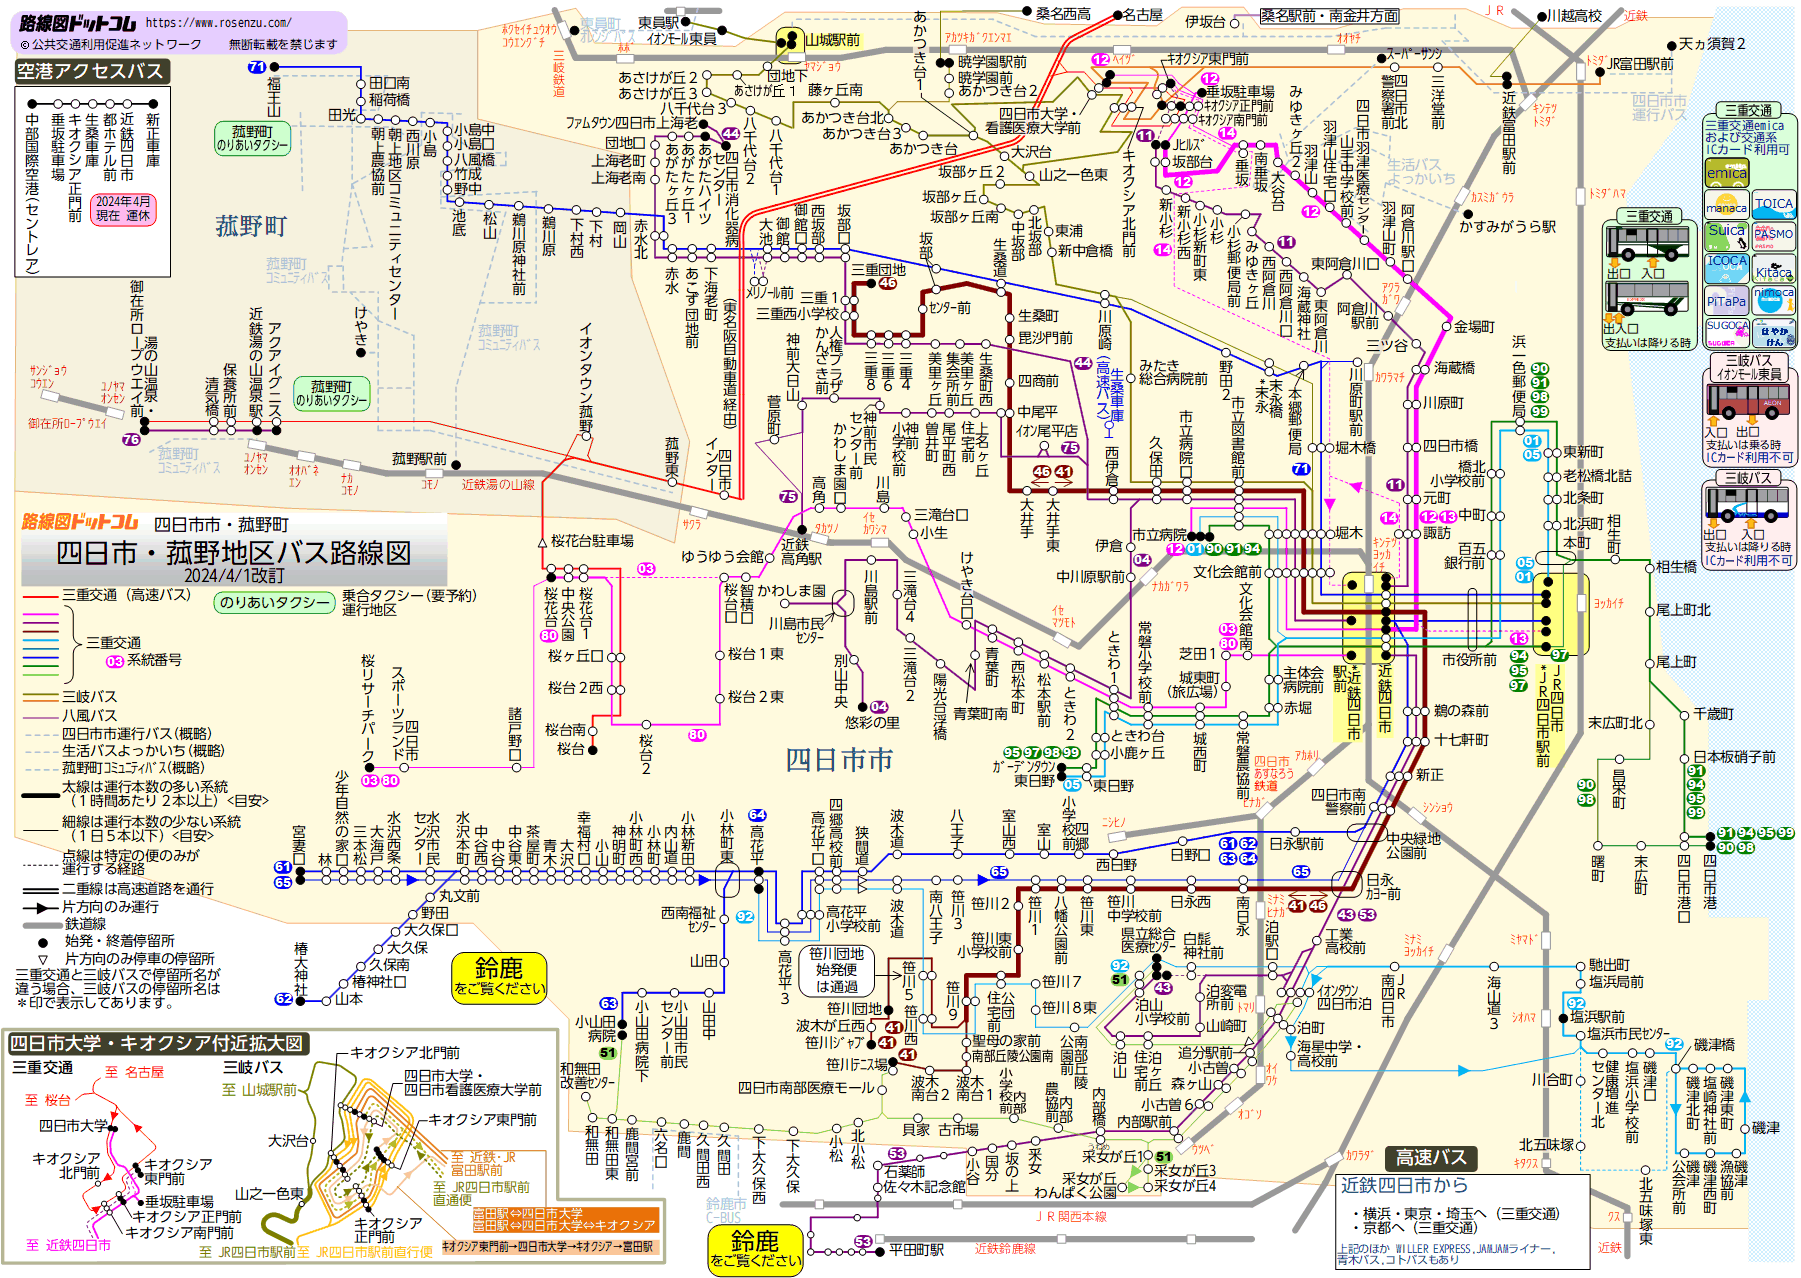 路線図ドットコム 三重県 四日市 菰野地区バス路線図